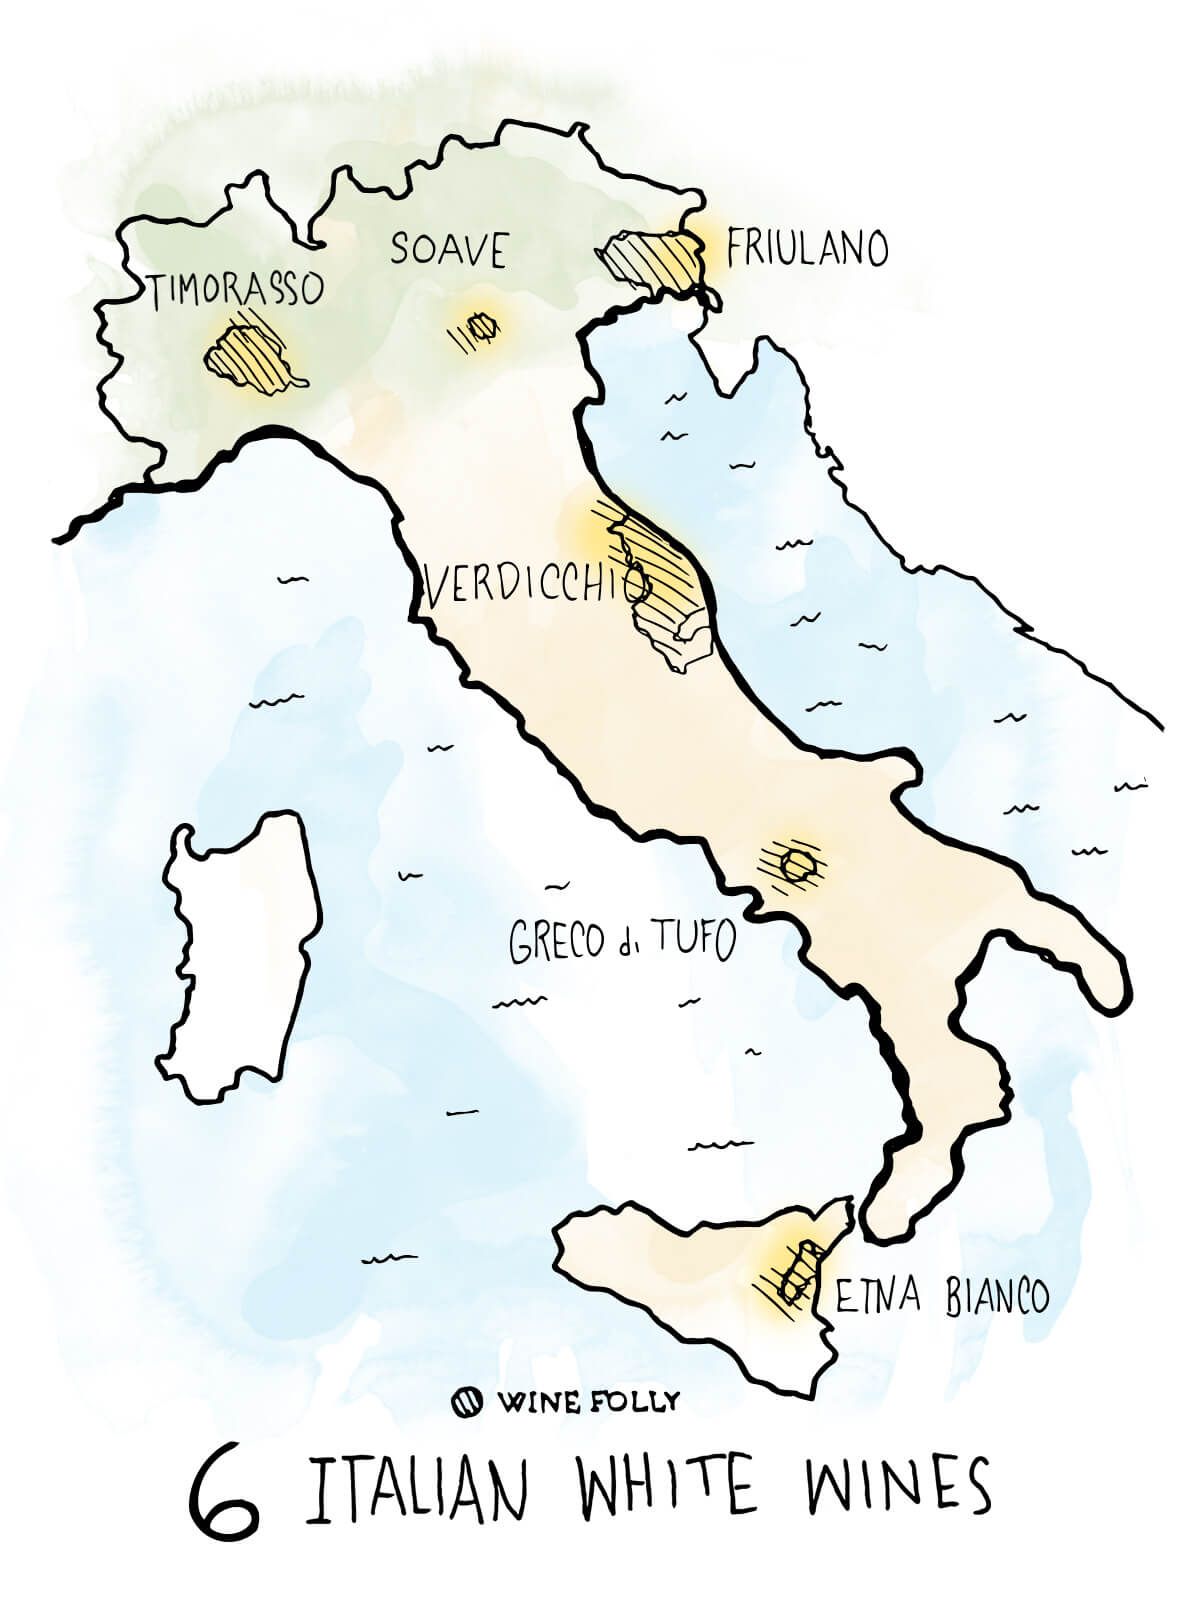 6-italijansko-bela-vina-za-vedeti-zemljevid-ilustracija-winefolly